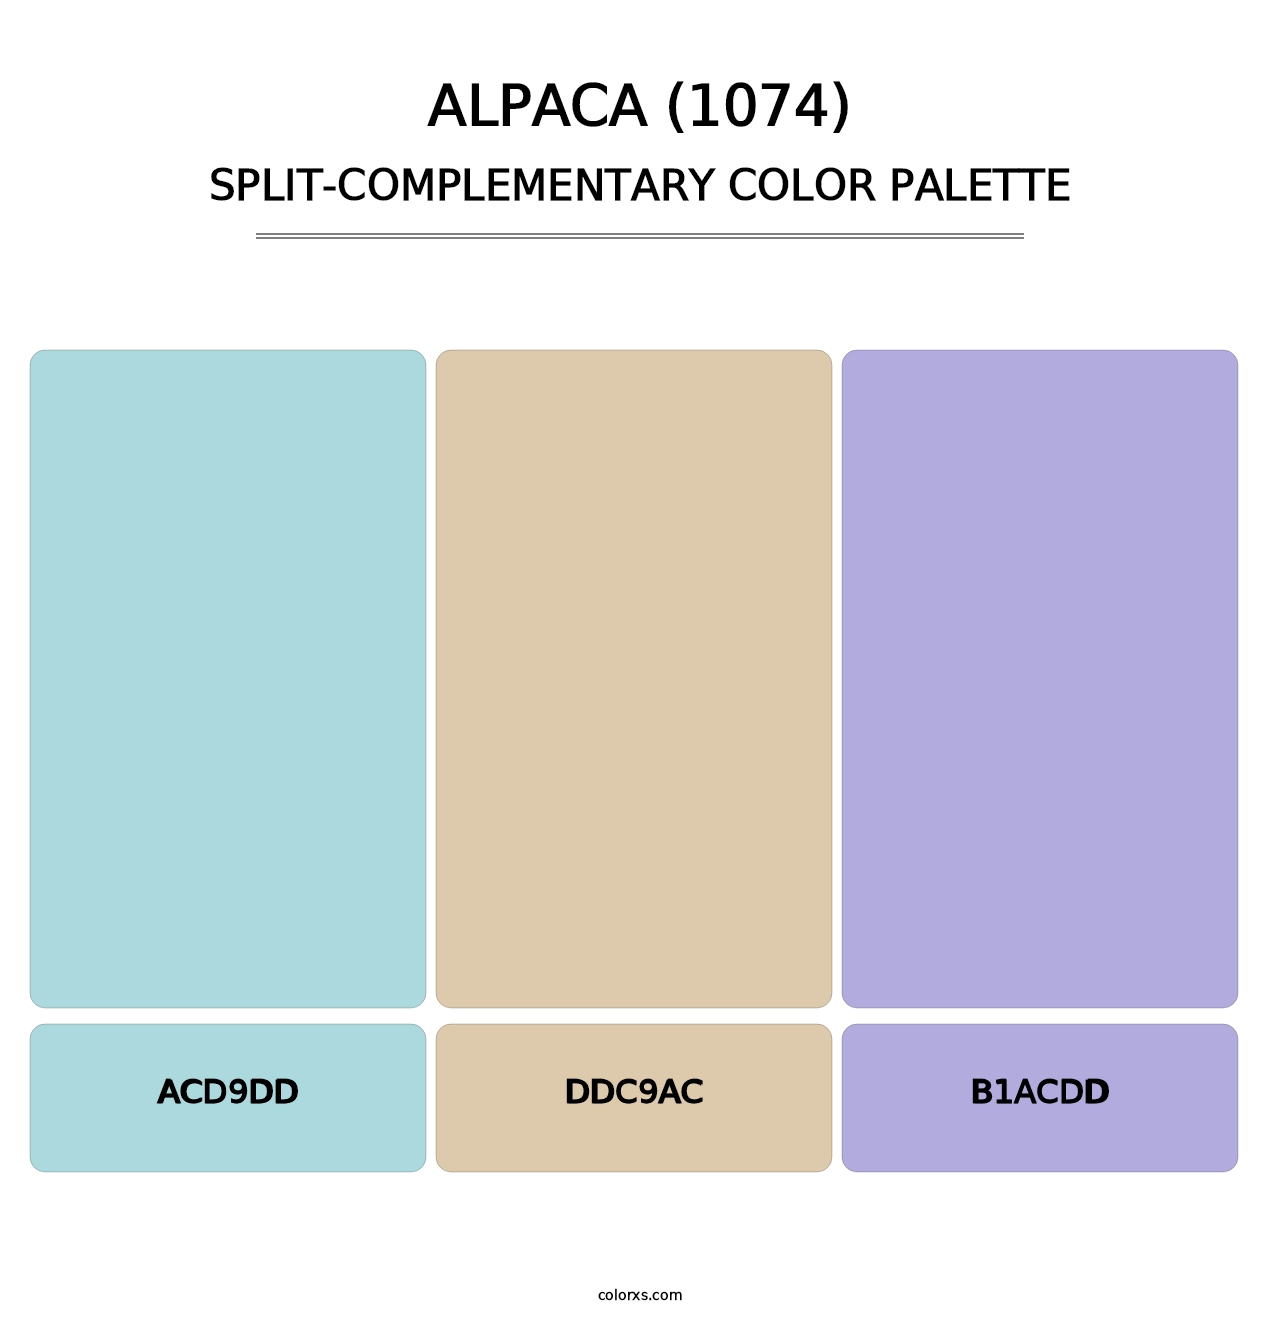 Alpaca (1074) - Split-Complementary Color Palette